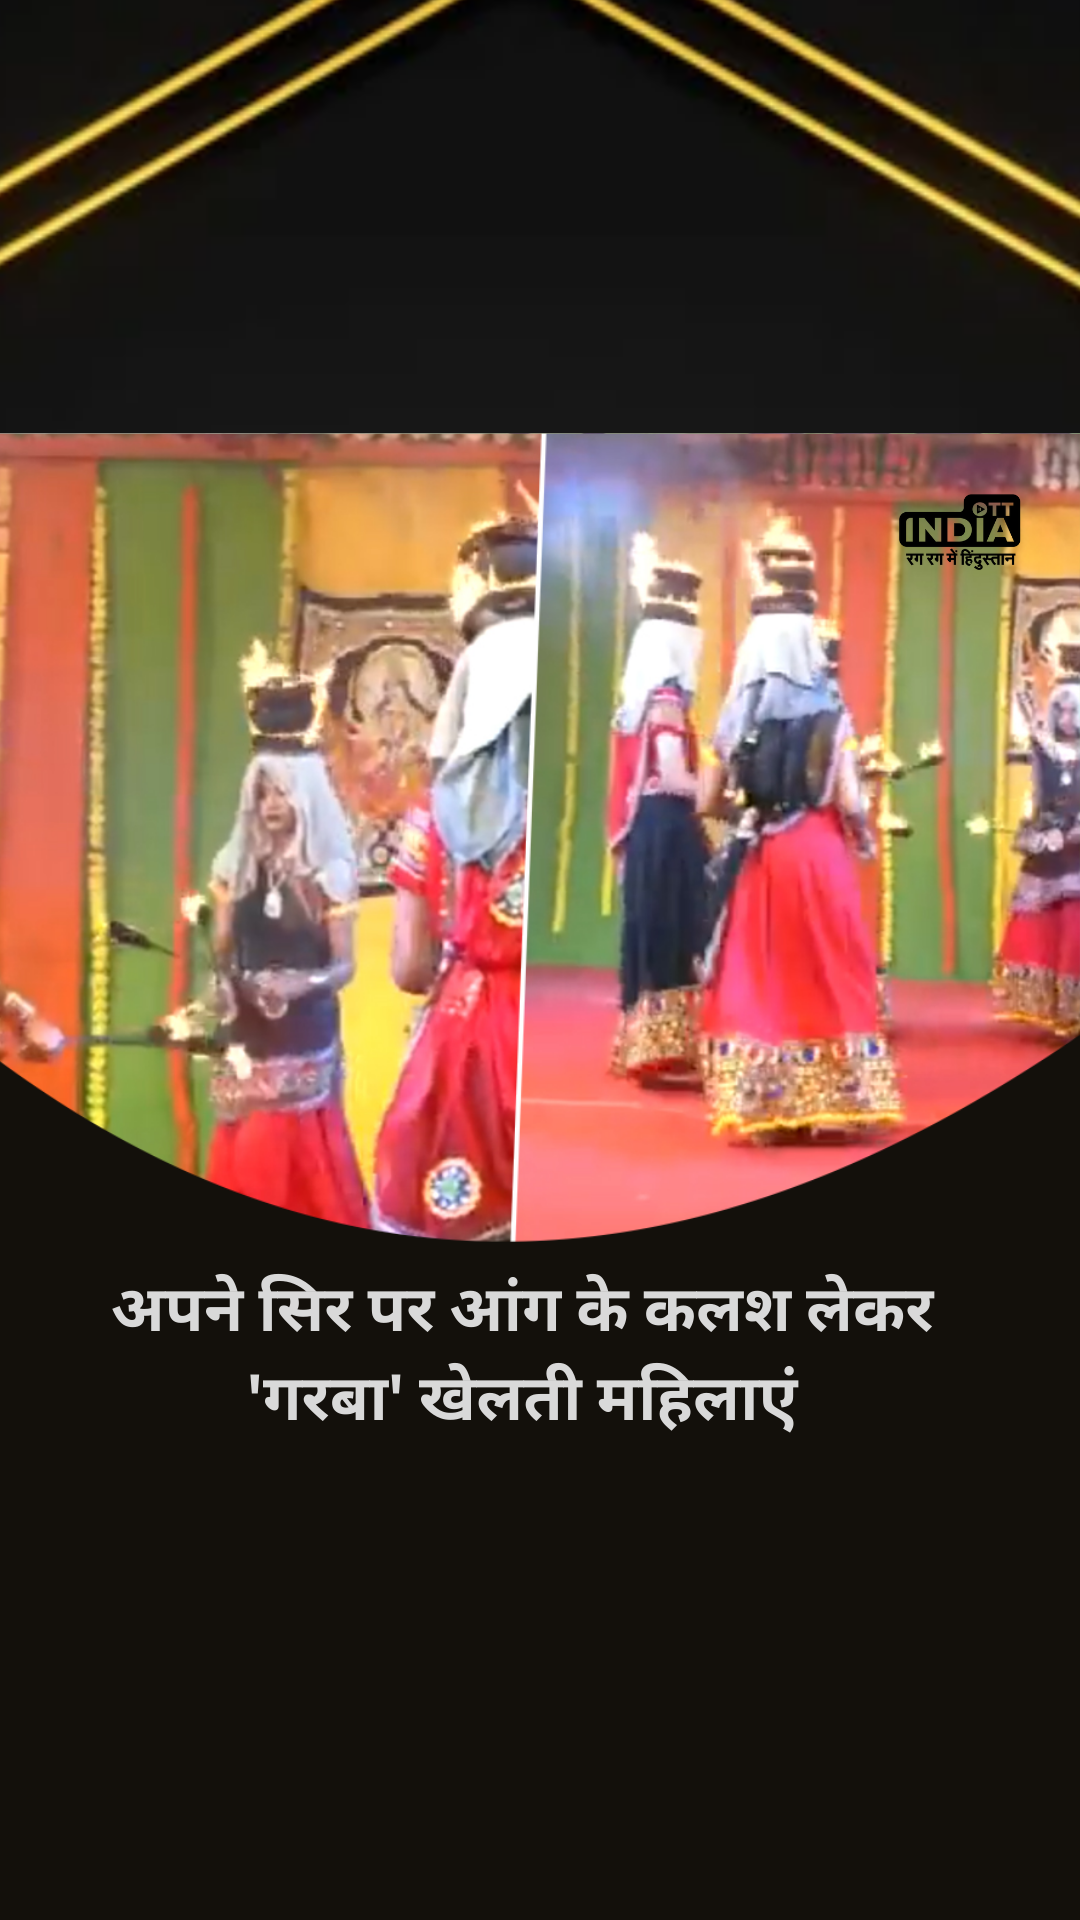 Gujarat Rajkot Garba Video: अपने सिर पर आंग के कलश लेकर ‘गरबा’ खेलती महिलाएं